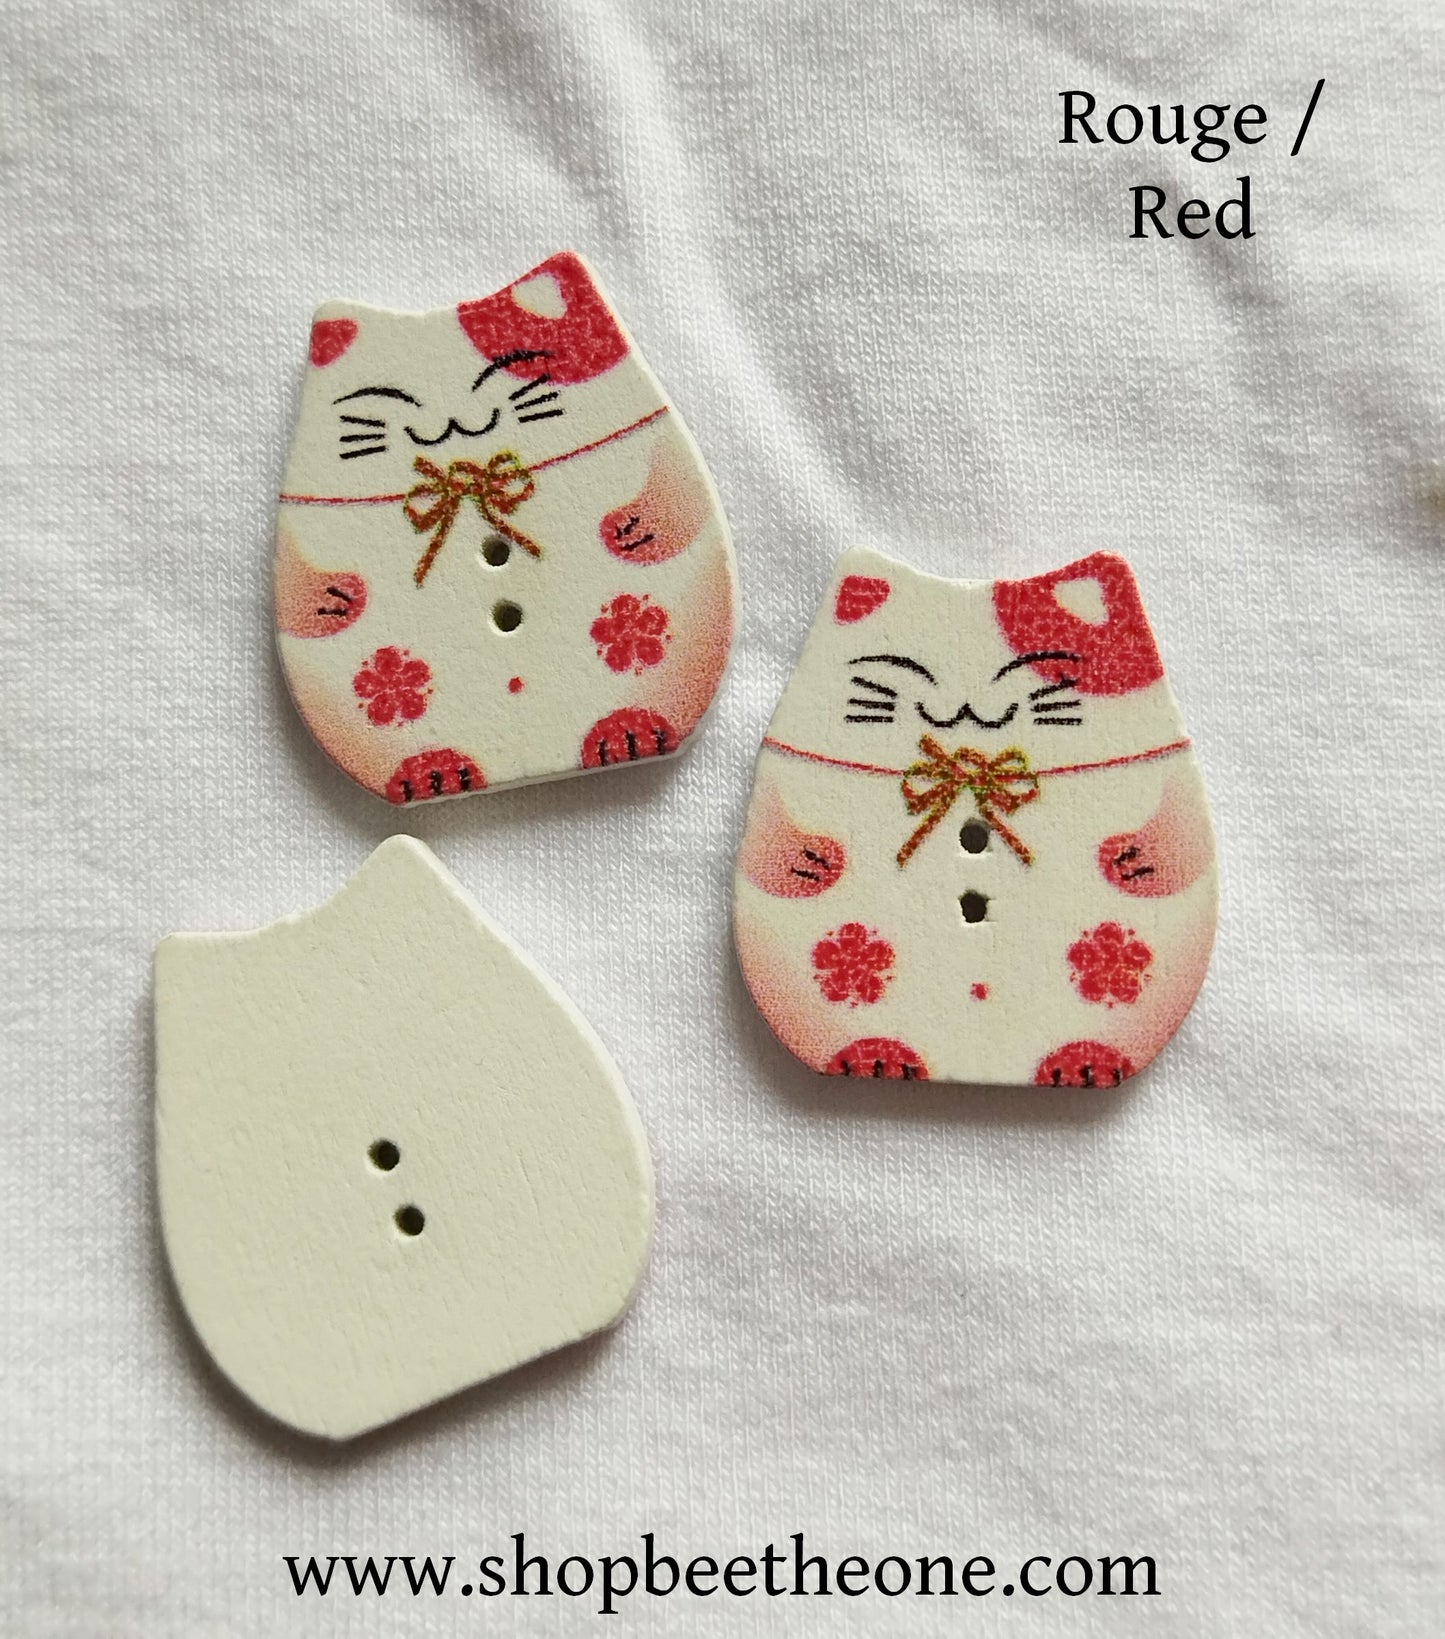 Bouton Chat porte-bonheur japonais "Maneki-neko" en bois - 25 mm - 8 coloris disponibles